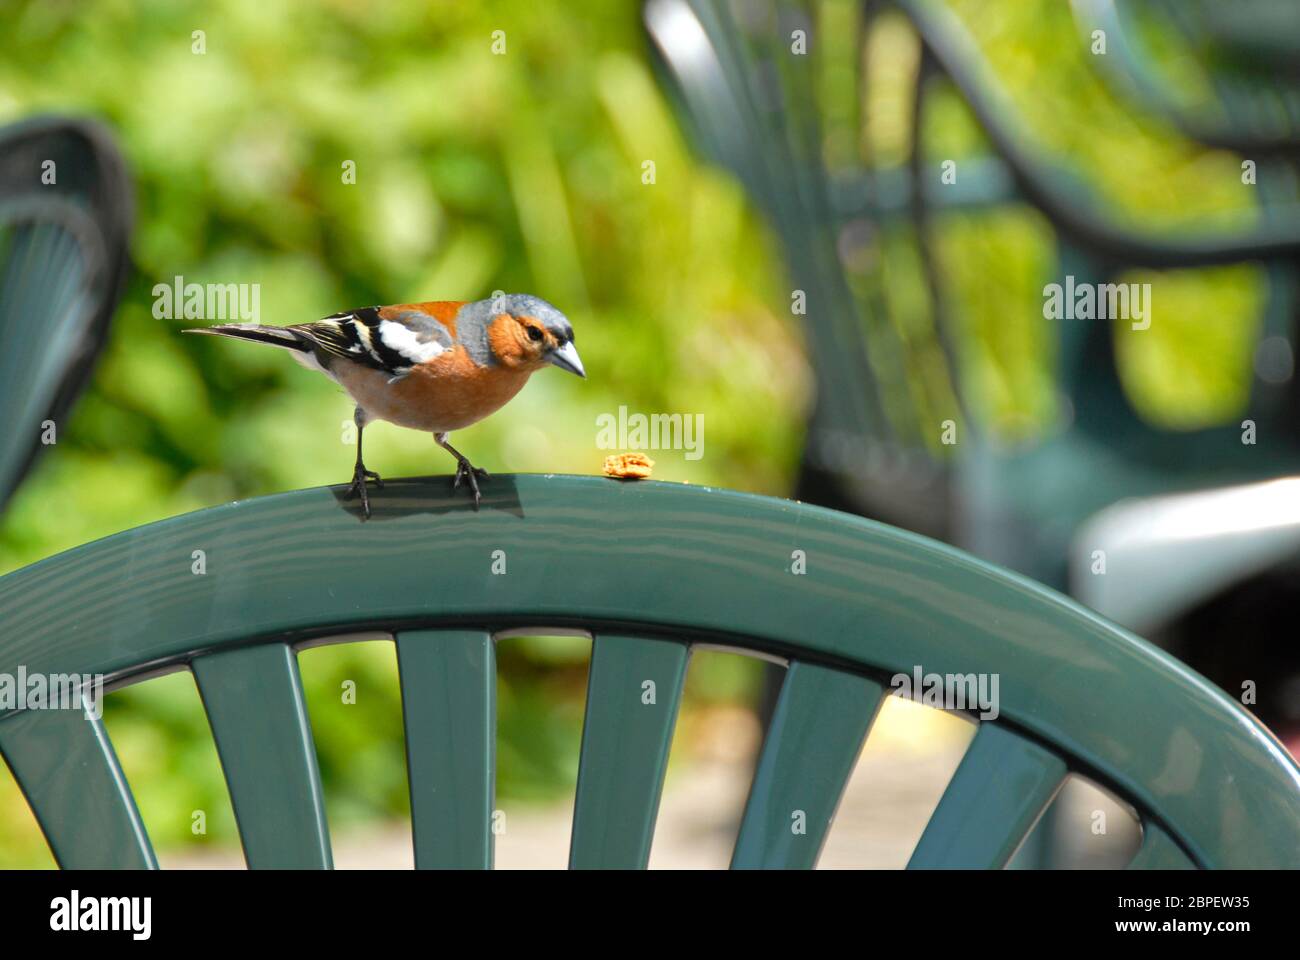 Maschio chaffinch trovare cibo sul retro di un sedile da giardino in plastica Foto Stock